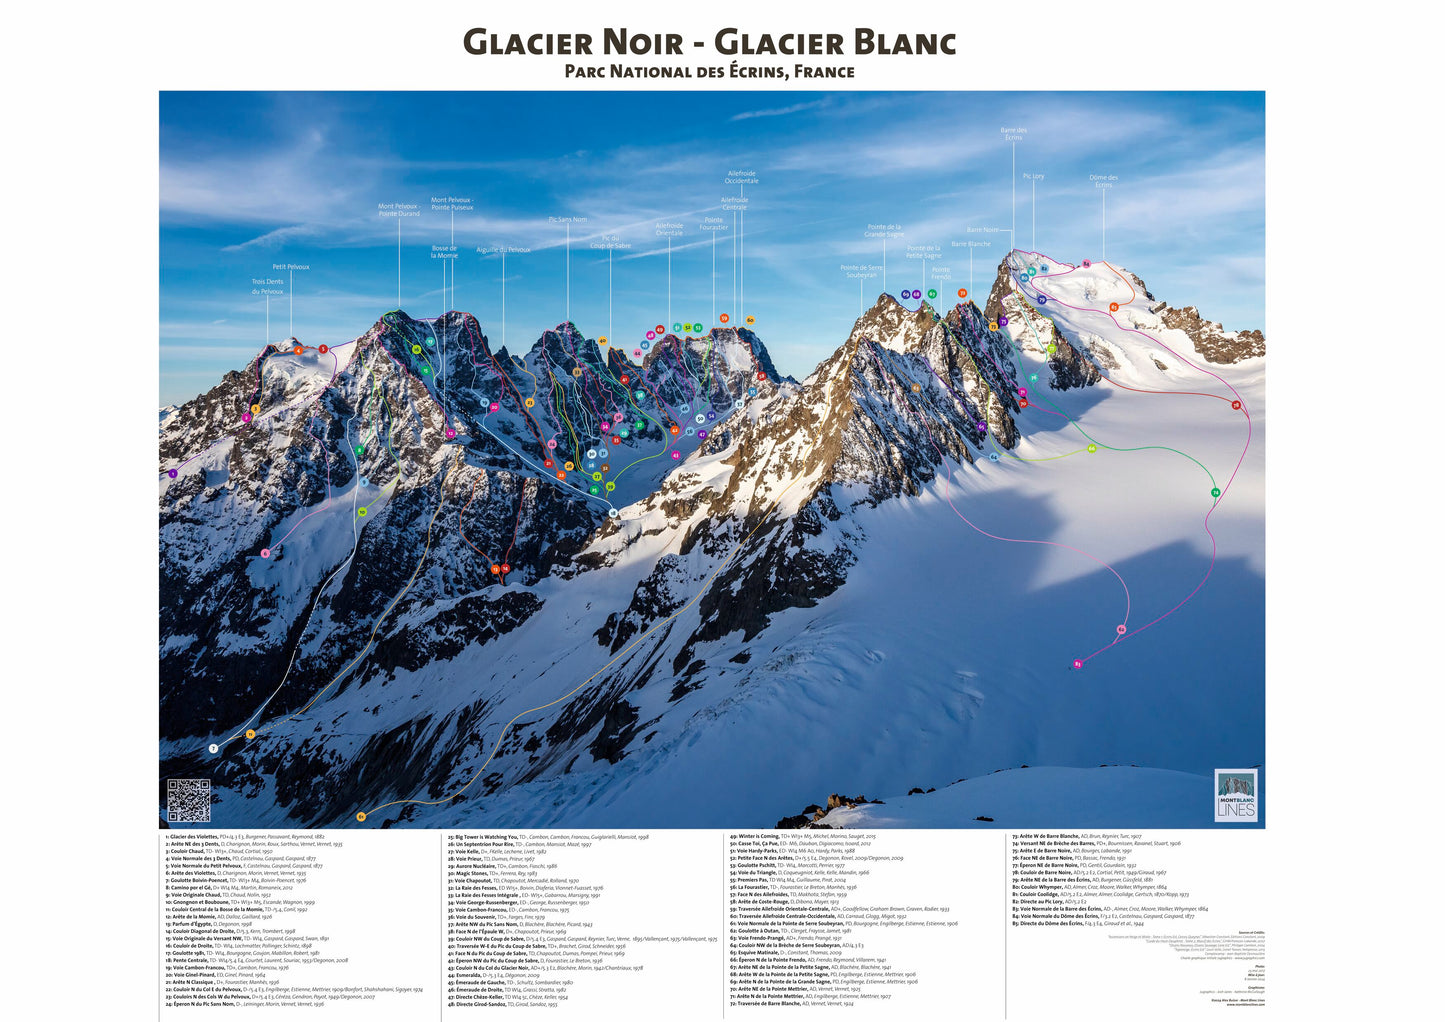 Glacier Noir - Glacier Blanc